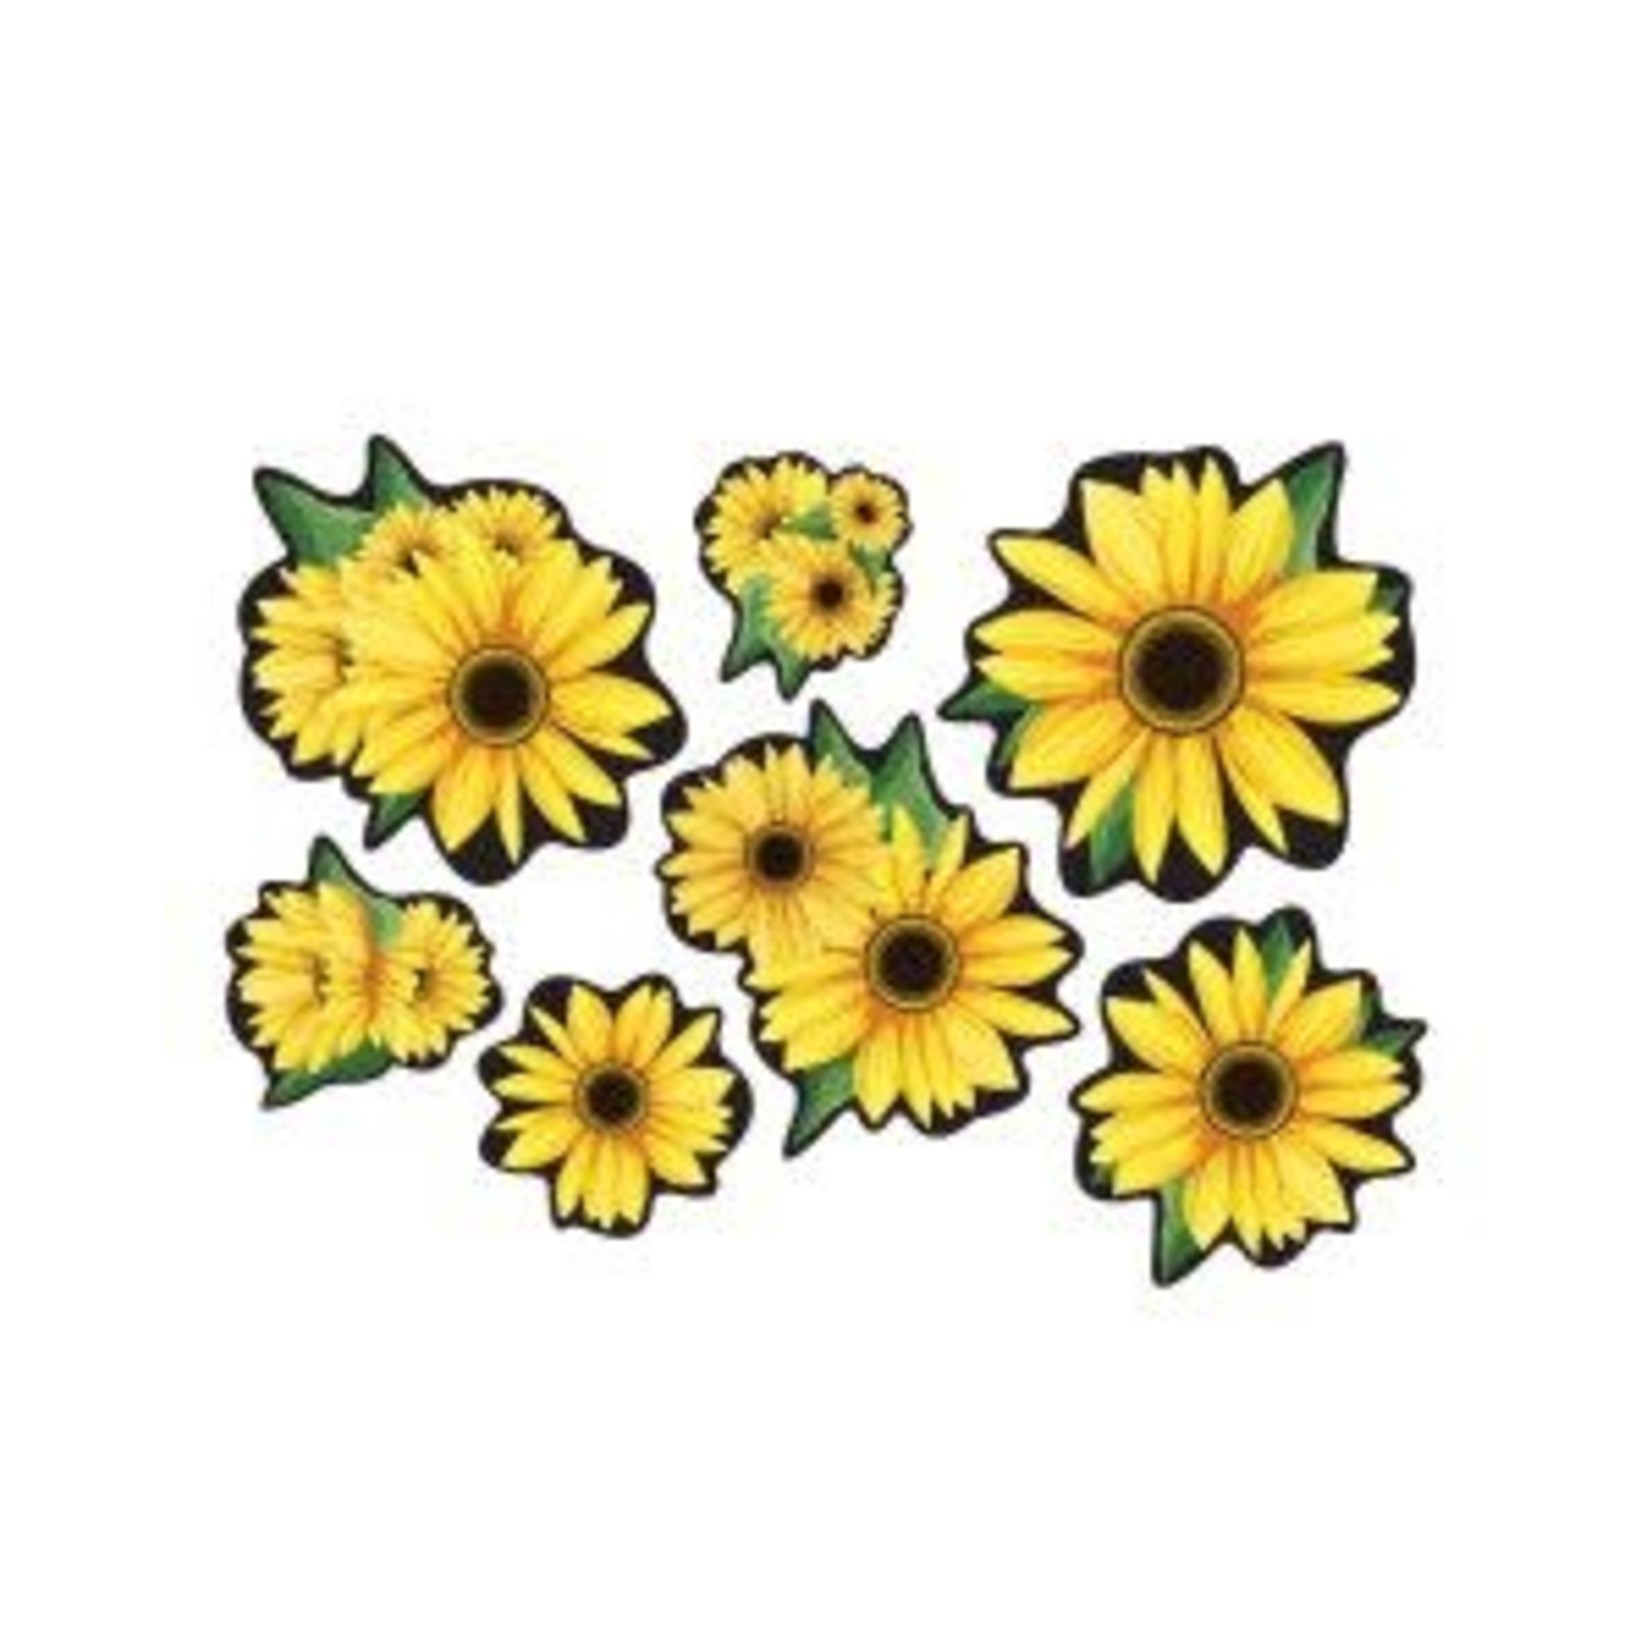 Beistle Sunflower Cutouts - 7ct. (Asst. Sizes)